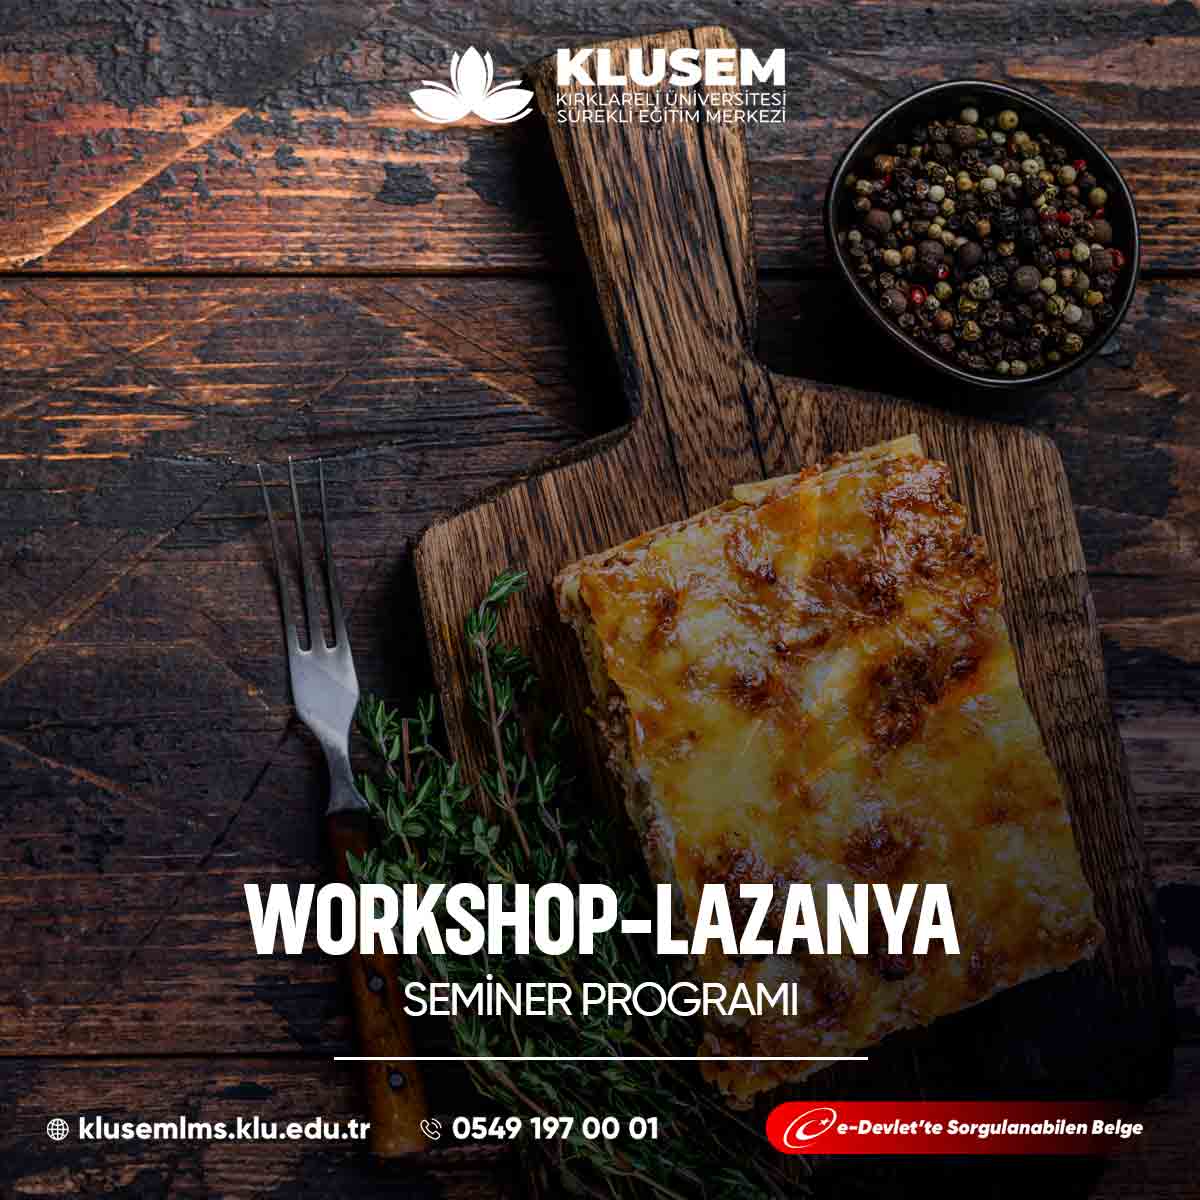  "Lazanya Workshop," katılımcılara İtalyan mutfağının klasiklerinden biri olan lazanya yapmayı öğrenme fırsatı sunar. 